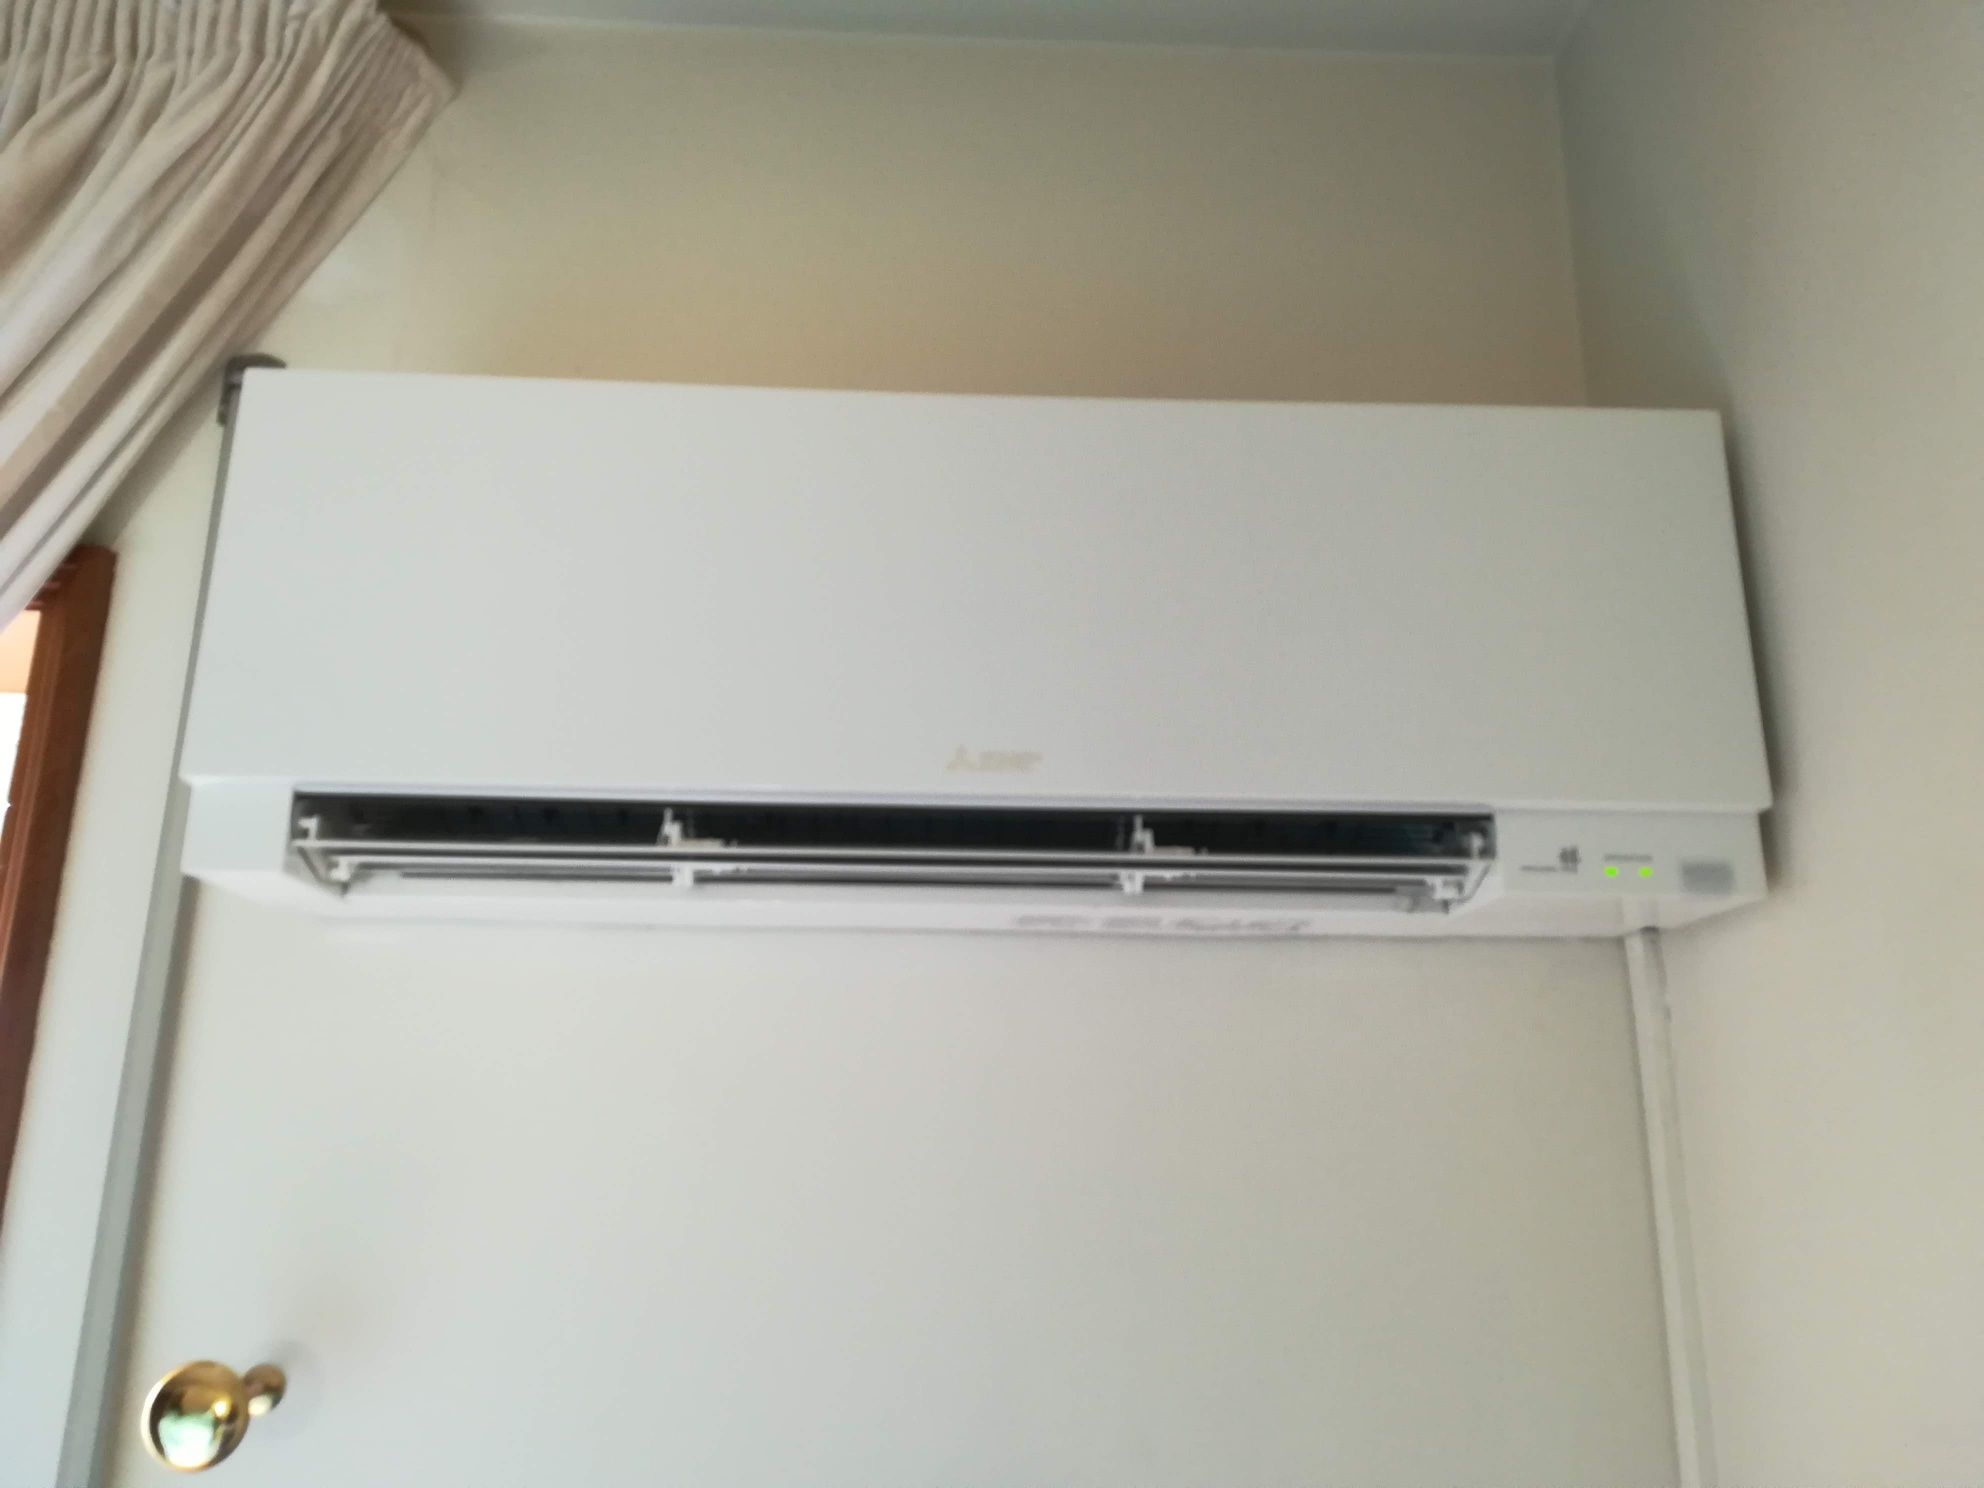 Venda,instalação e manutenção de ar condicionado